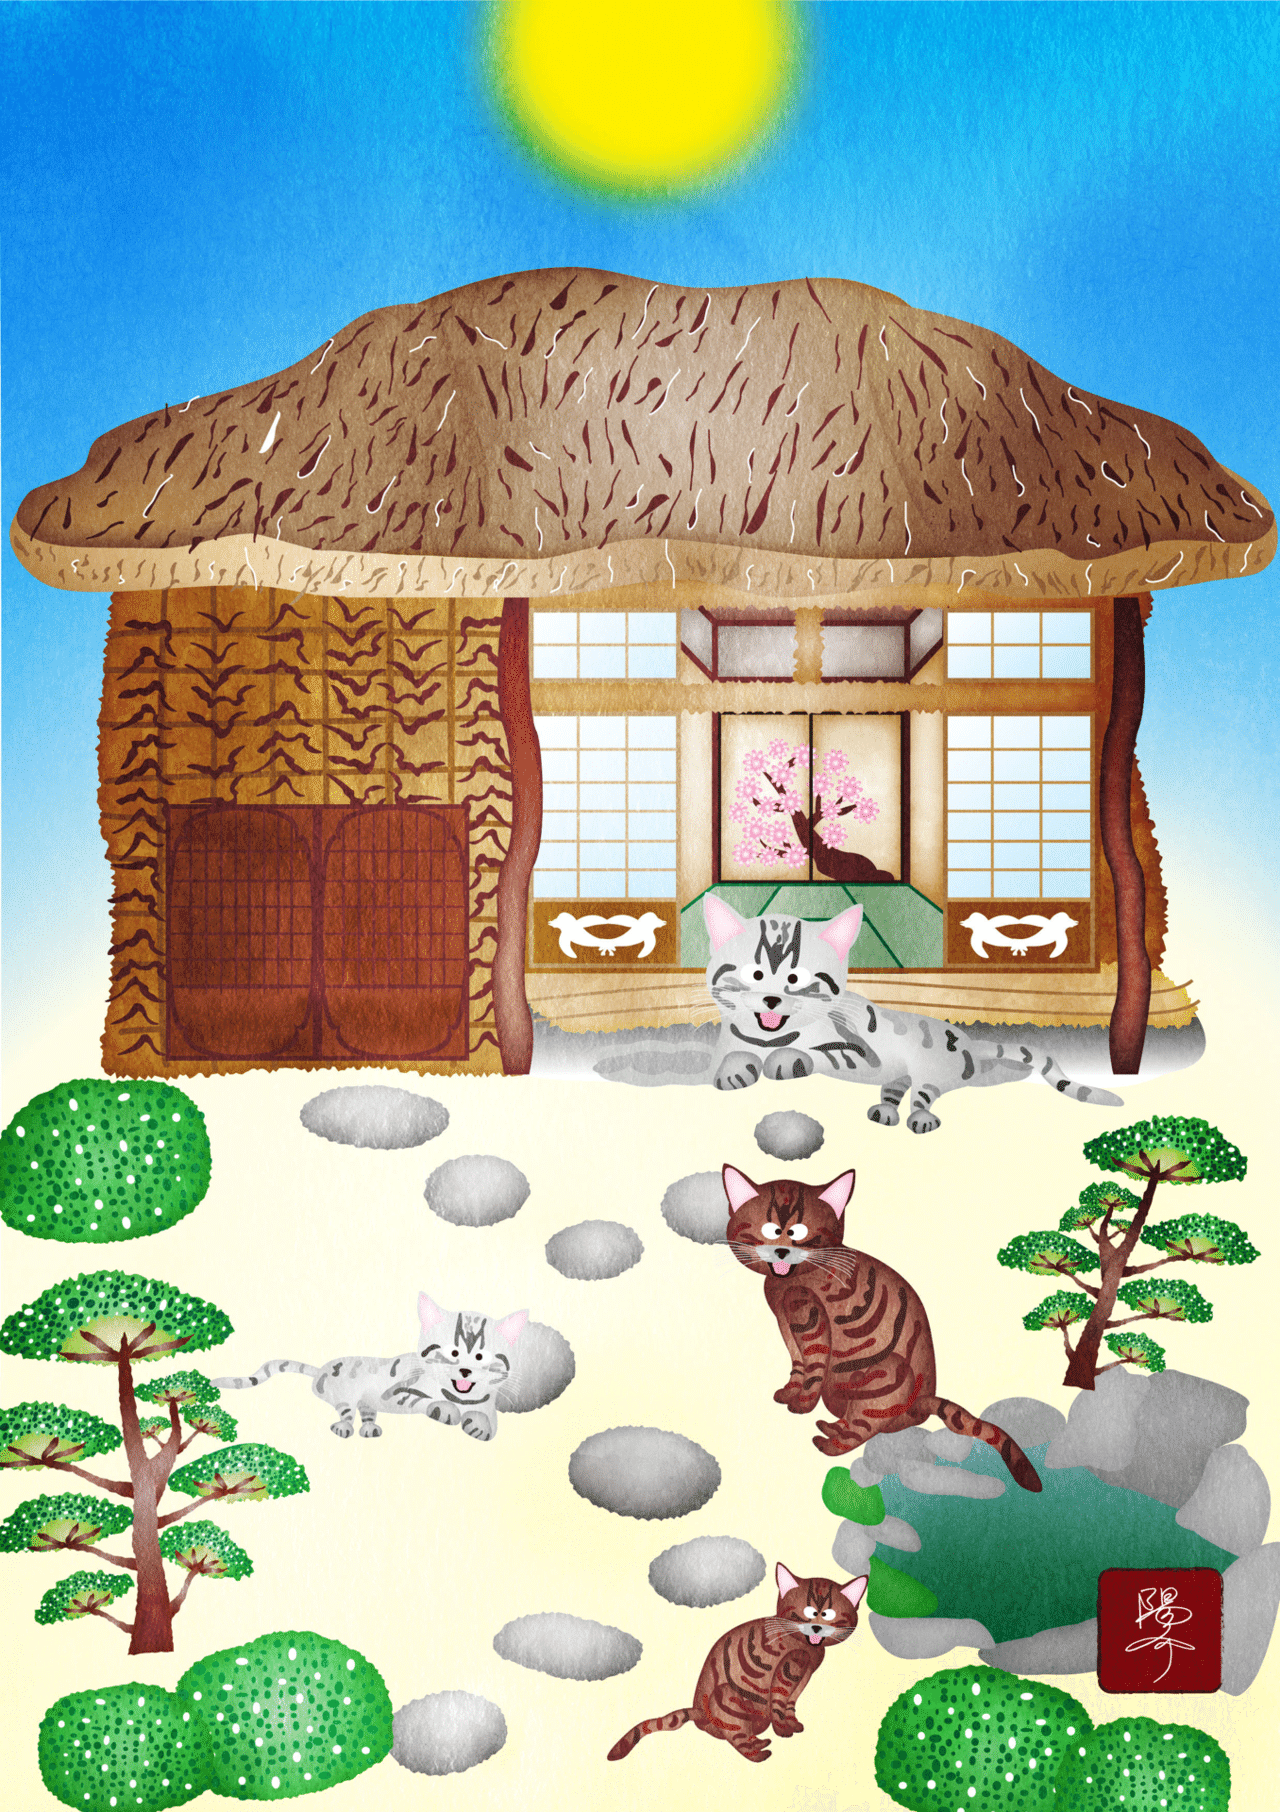 昔の家に猫がいる様子を描きました Oekaki6643 Note